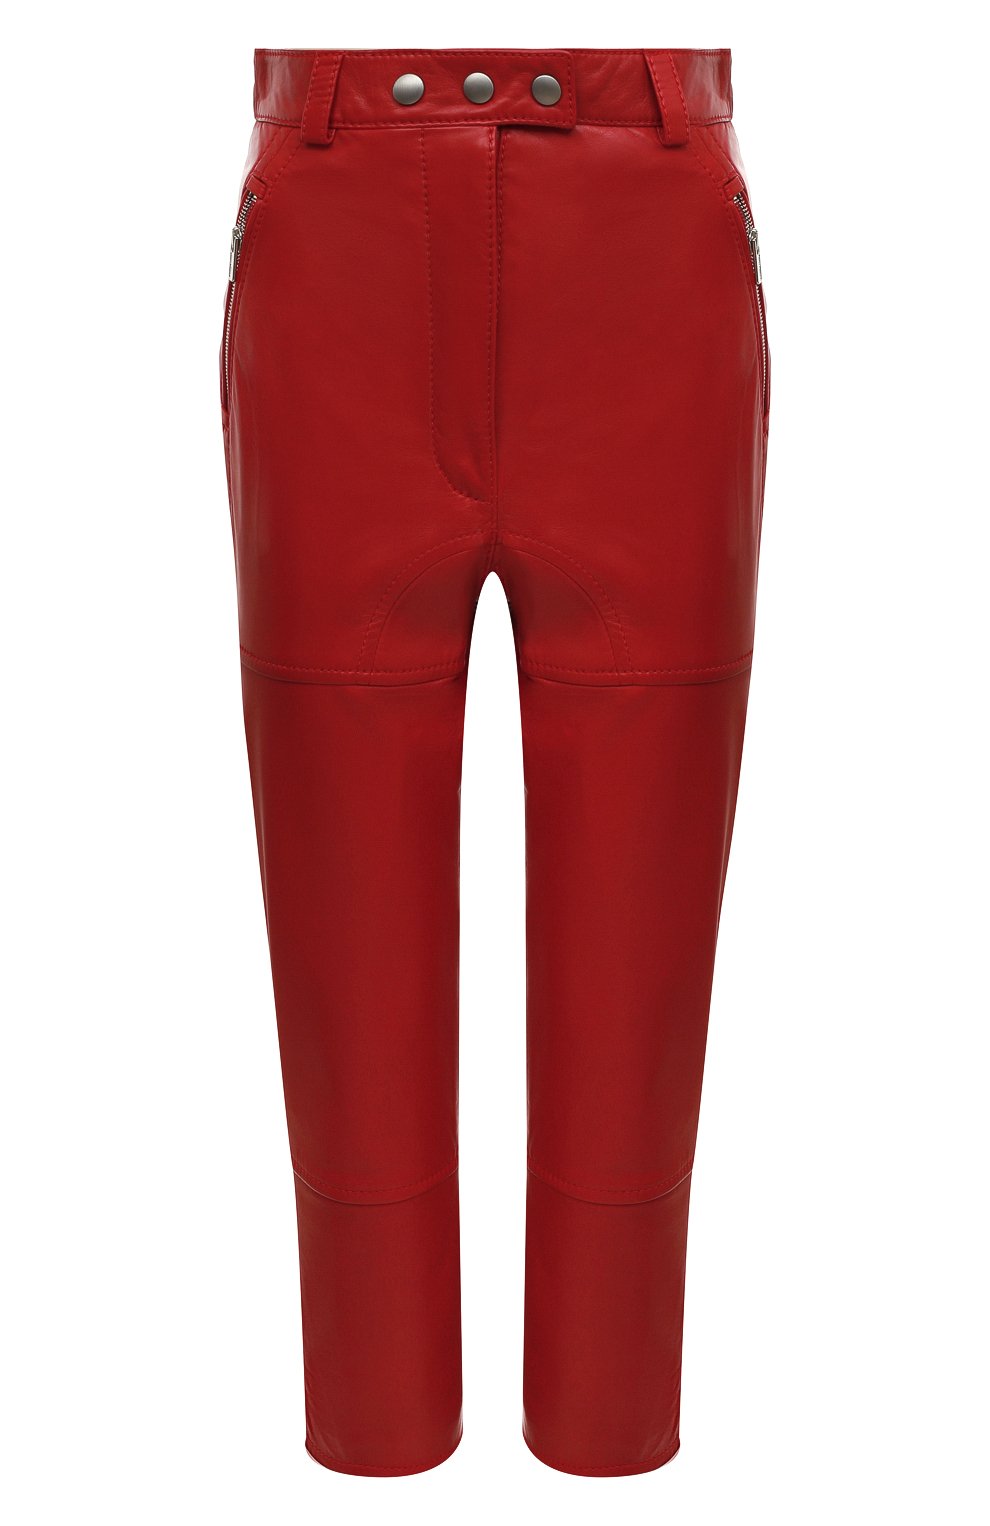 Женские кожаные брюки MIU MIU красного цвета, арт. MPP326-038-F0011 | Фото 1 (Женское Кросс-КТ: Брюки-одежда, Кожаные брюки; Стили: Гранж; Материал внешний: Натуральная кожа; Силуэт Ж (брюки и джинсы): Узкие; Длина (брюки, джинсы): Укороченные)